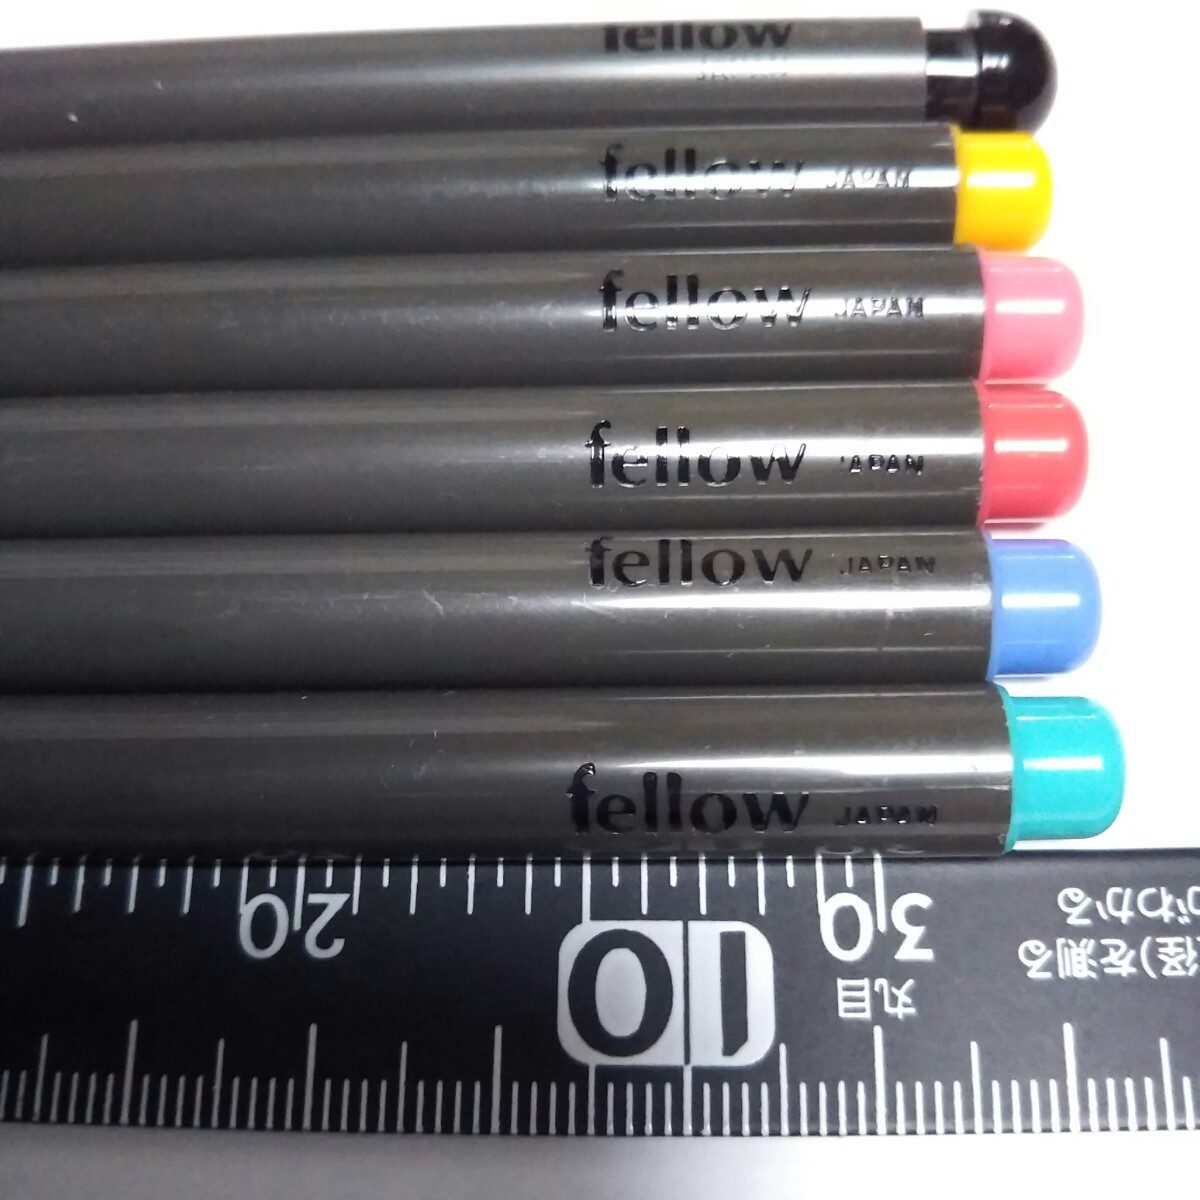 シャーペン 1本  マーカー 黄色1本  細字ペン桃色、赤色、青色、緑色合計4色